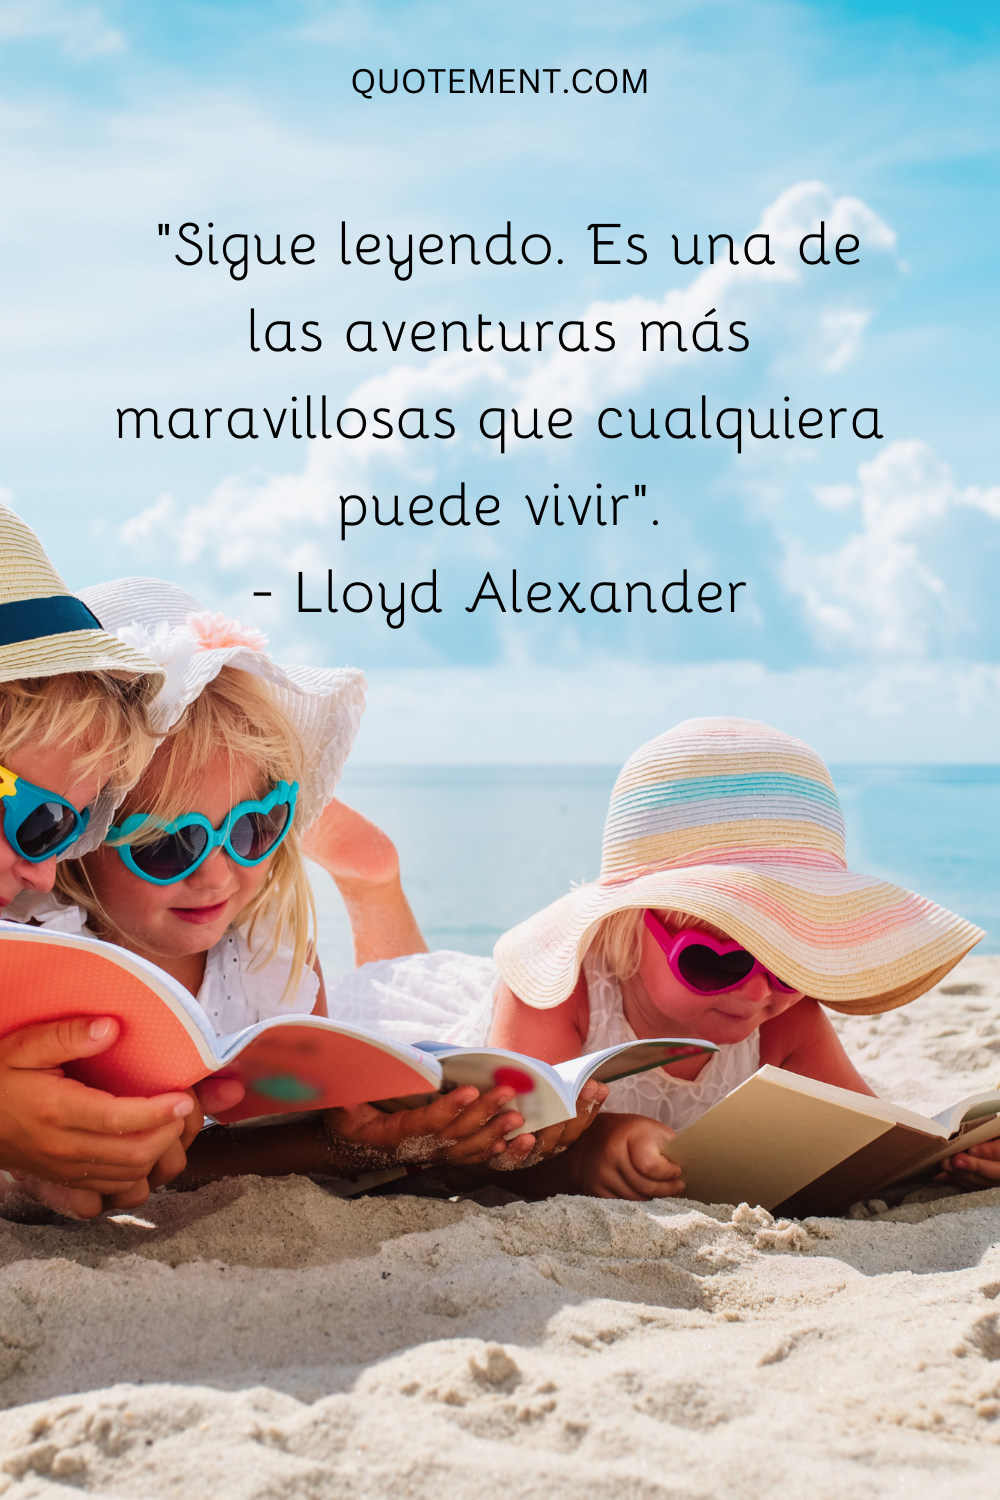 "Sigue leyendo. Es una de las aventuras más maravillosas que cualquiera puede vivir". - Lloyd Alexander